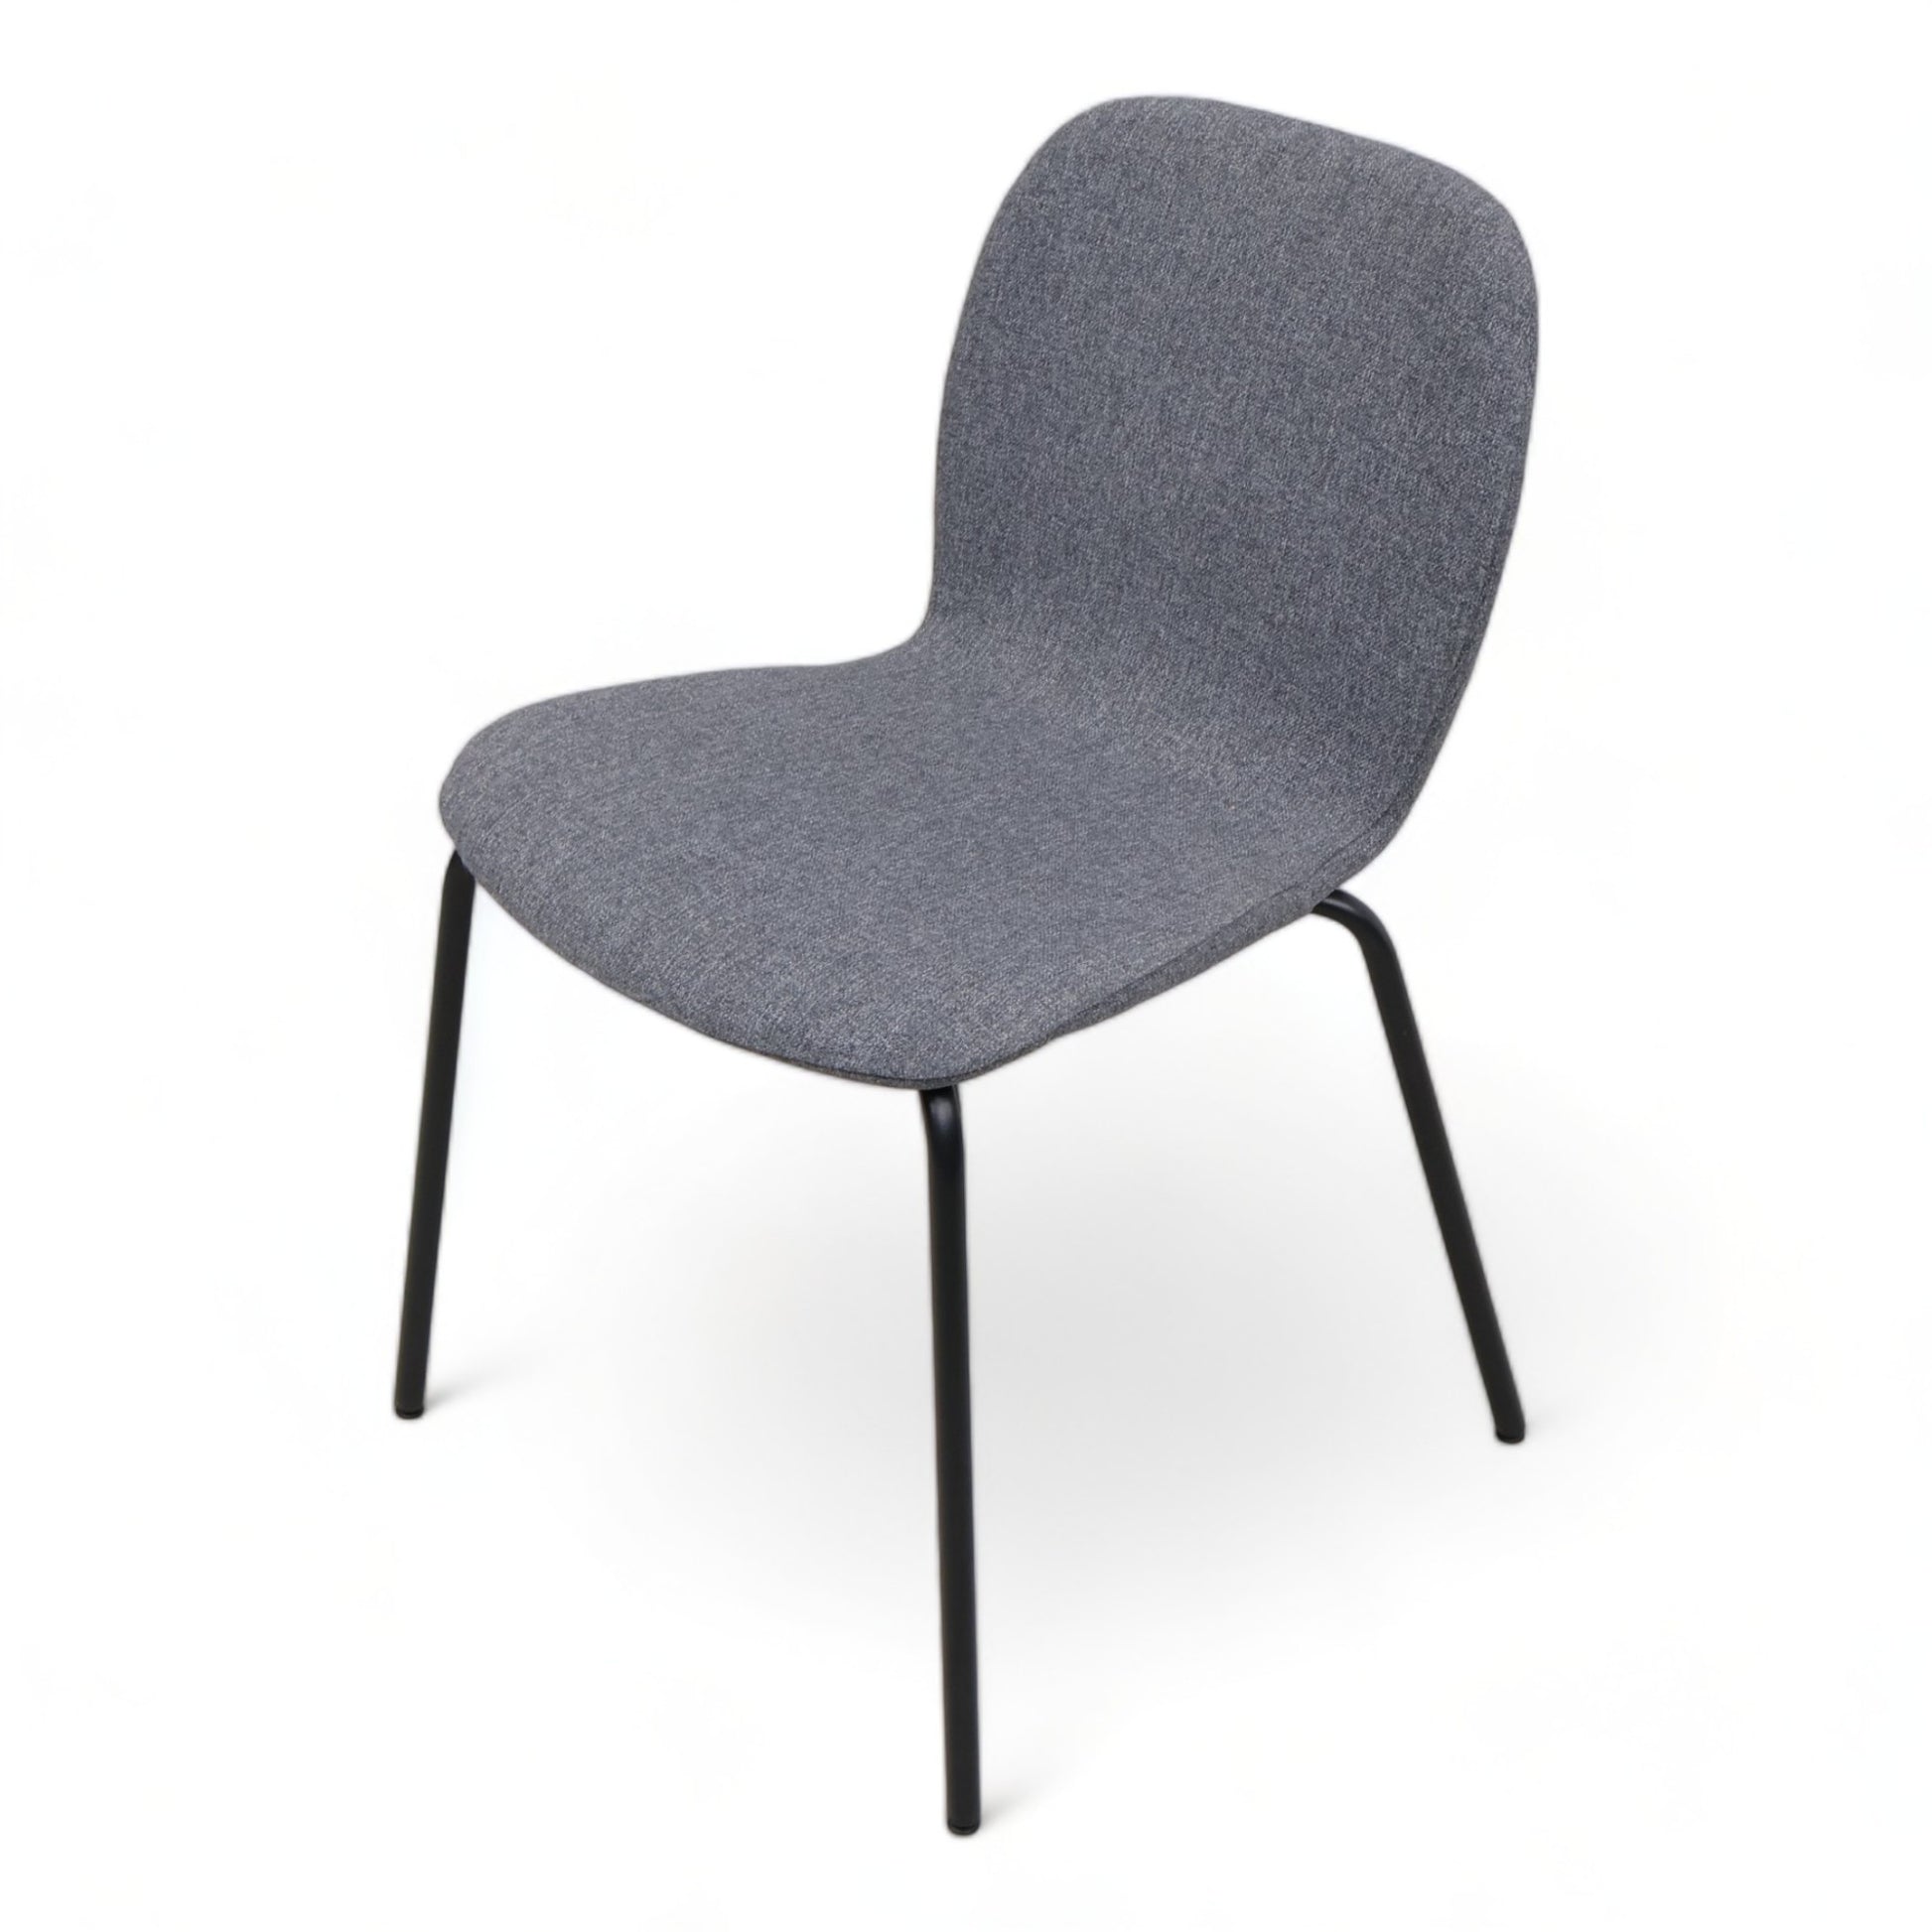 Nyrenset | IKEA Karlpetter stol